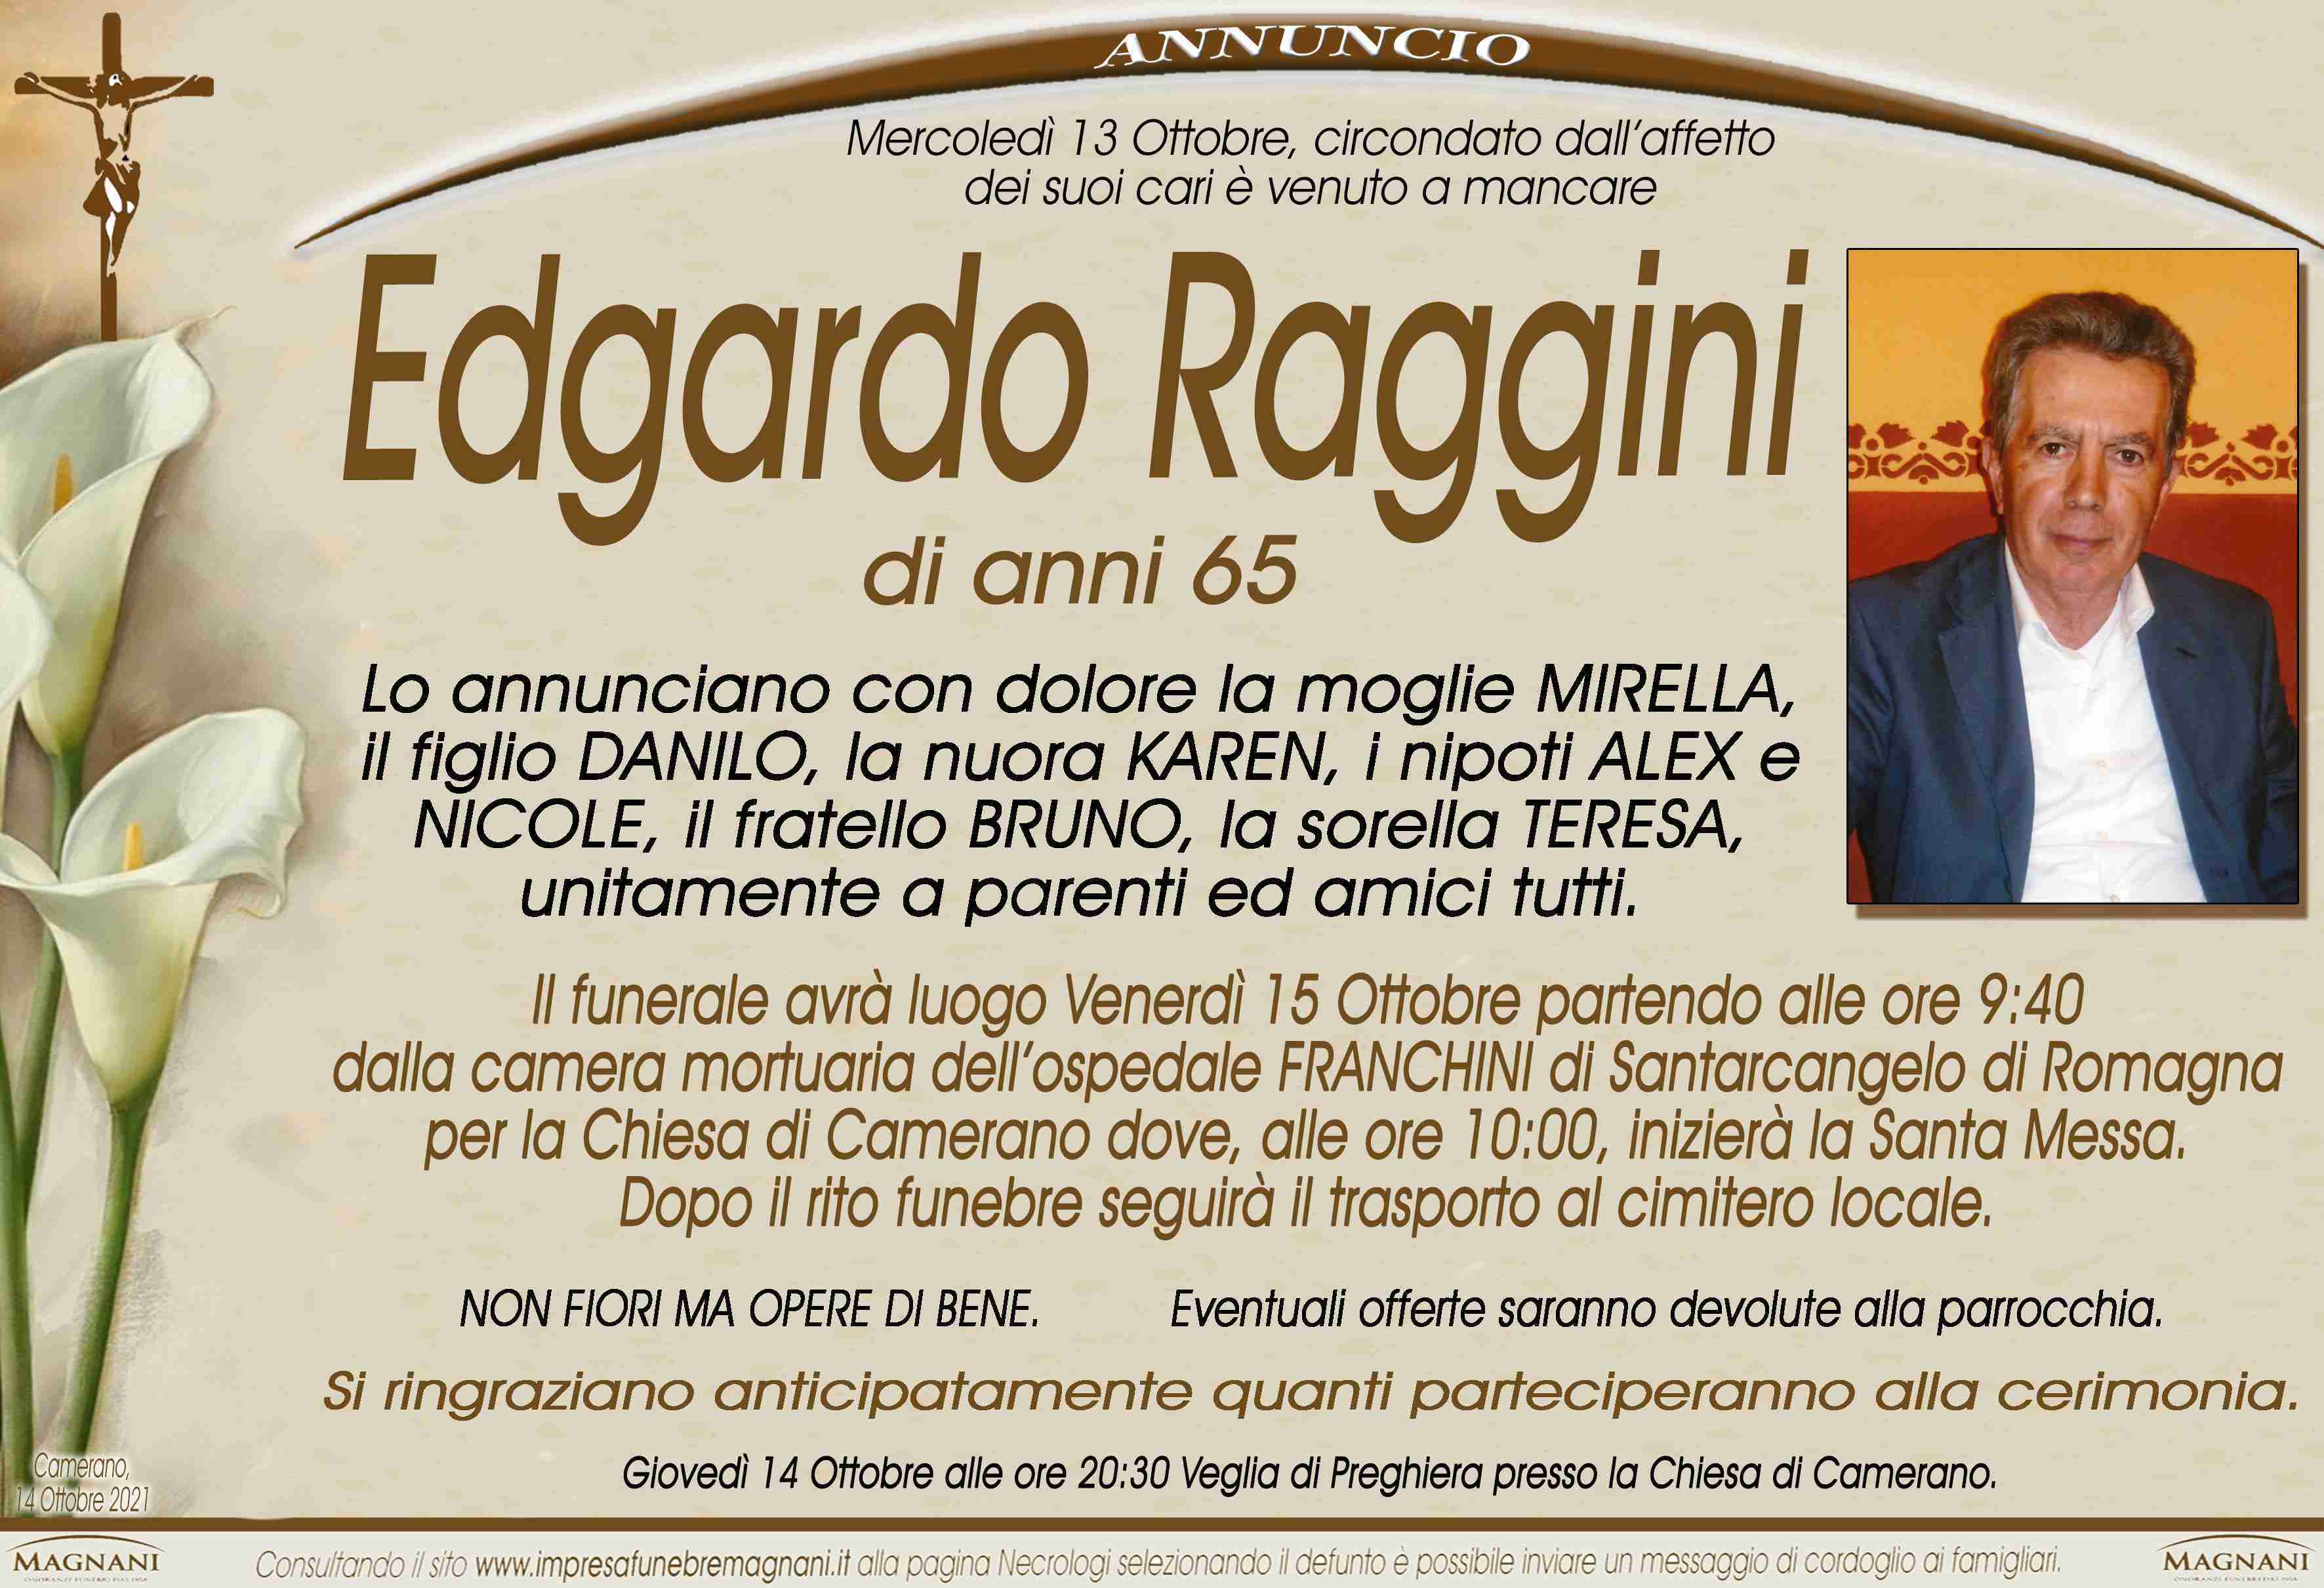 Edgardo Raggini